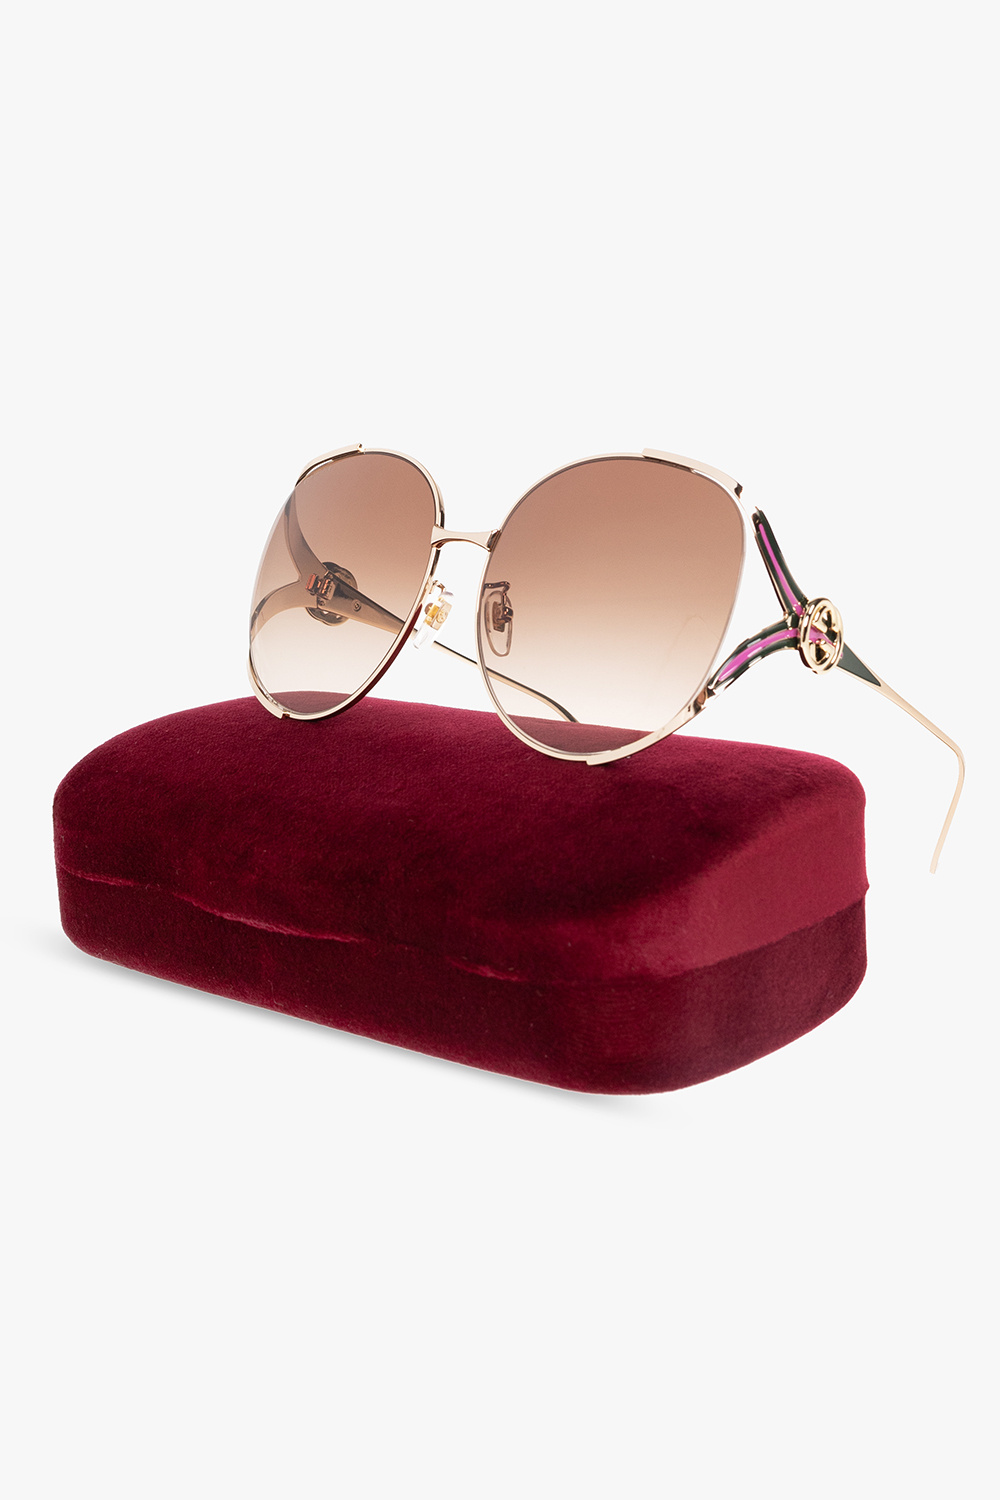 Gucci Paul sunglasses